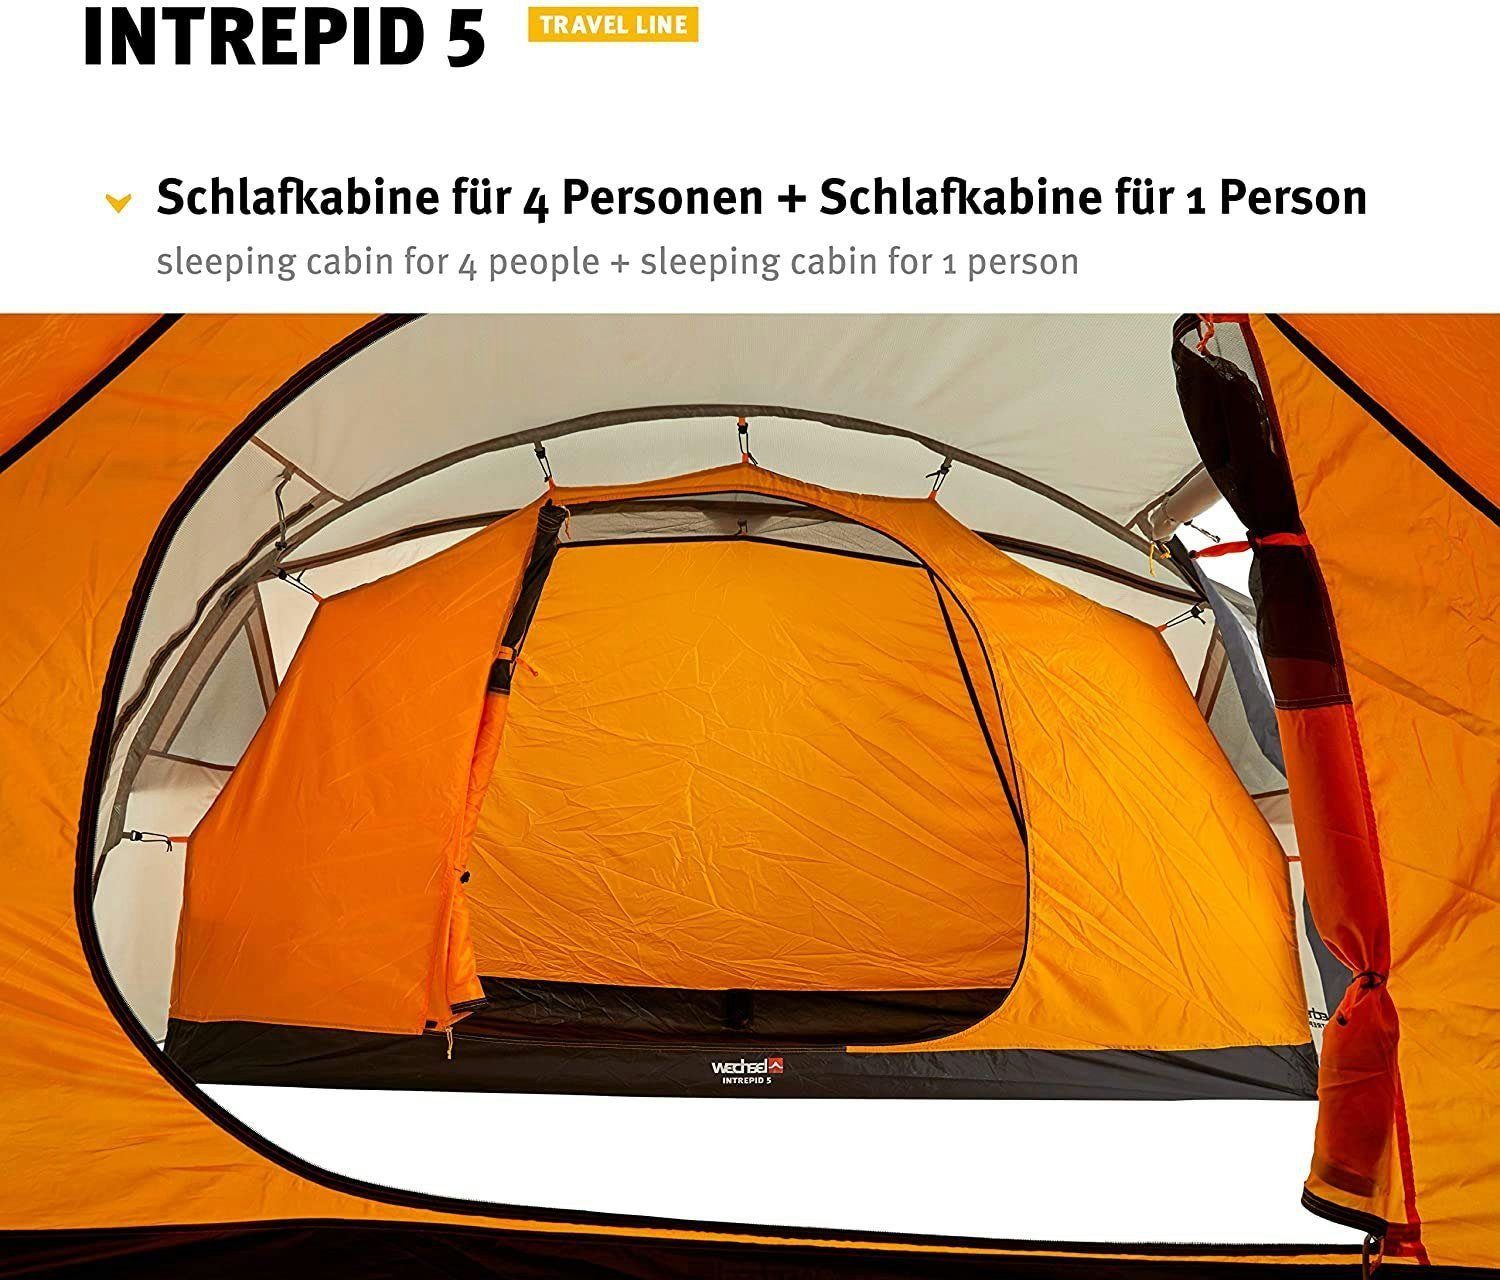 Wechsel Tents Intrepid 5 Tunnelzelt 5-Personen 5 - - Personen: Travel Line Familienzelt